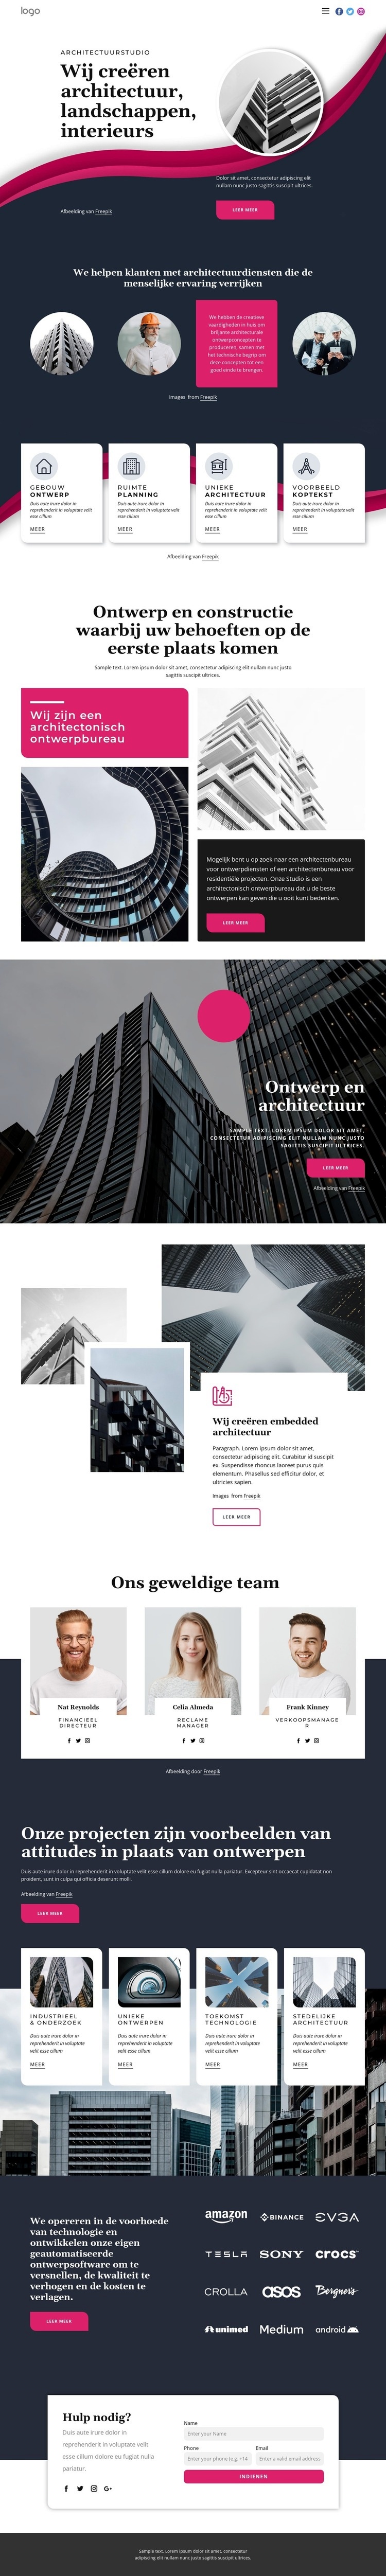 Wij creëren geweldige architectuur Sjabloon voor één pagina